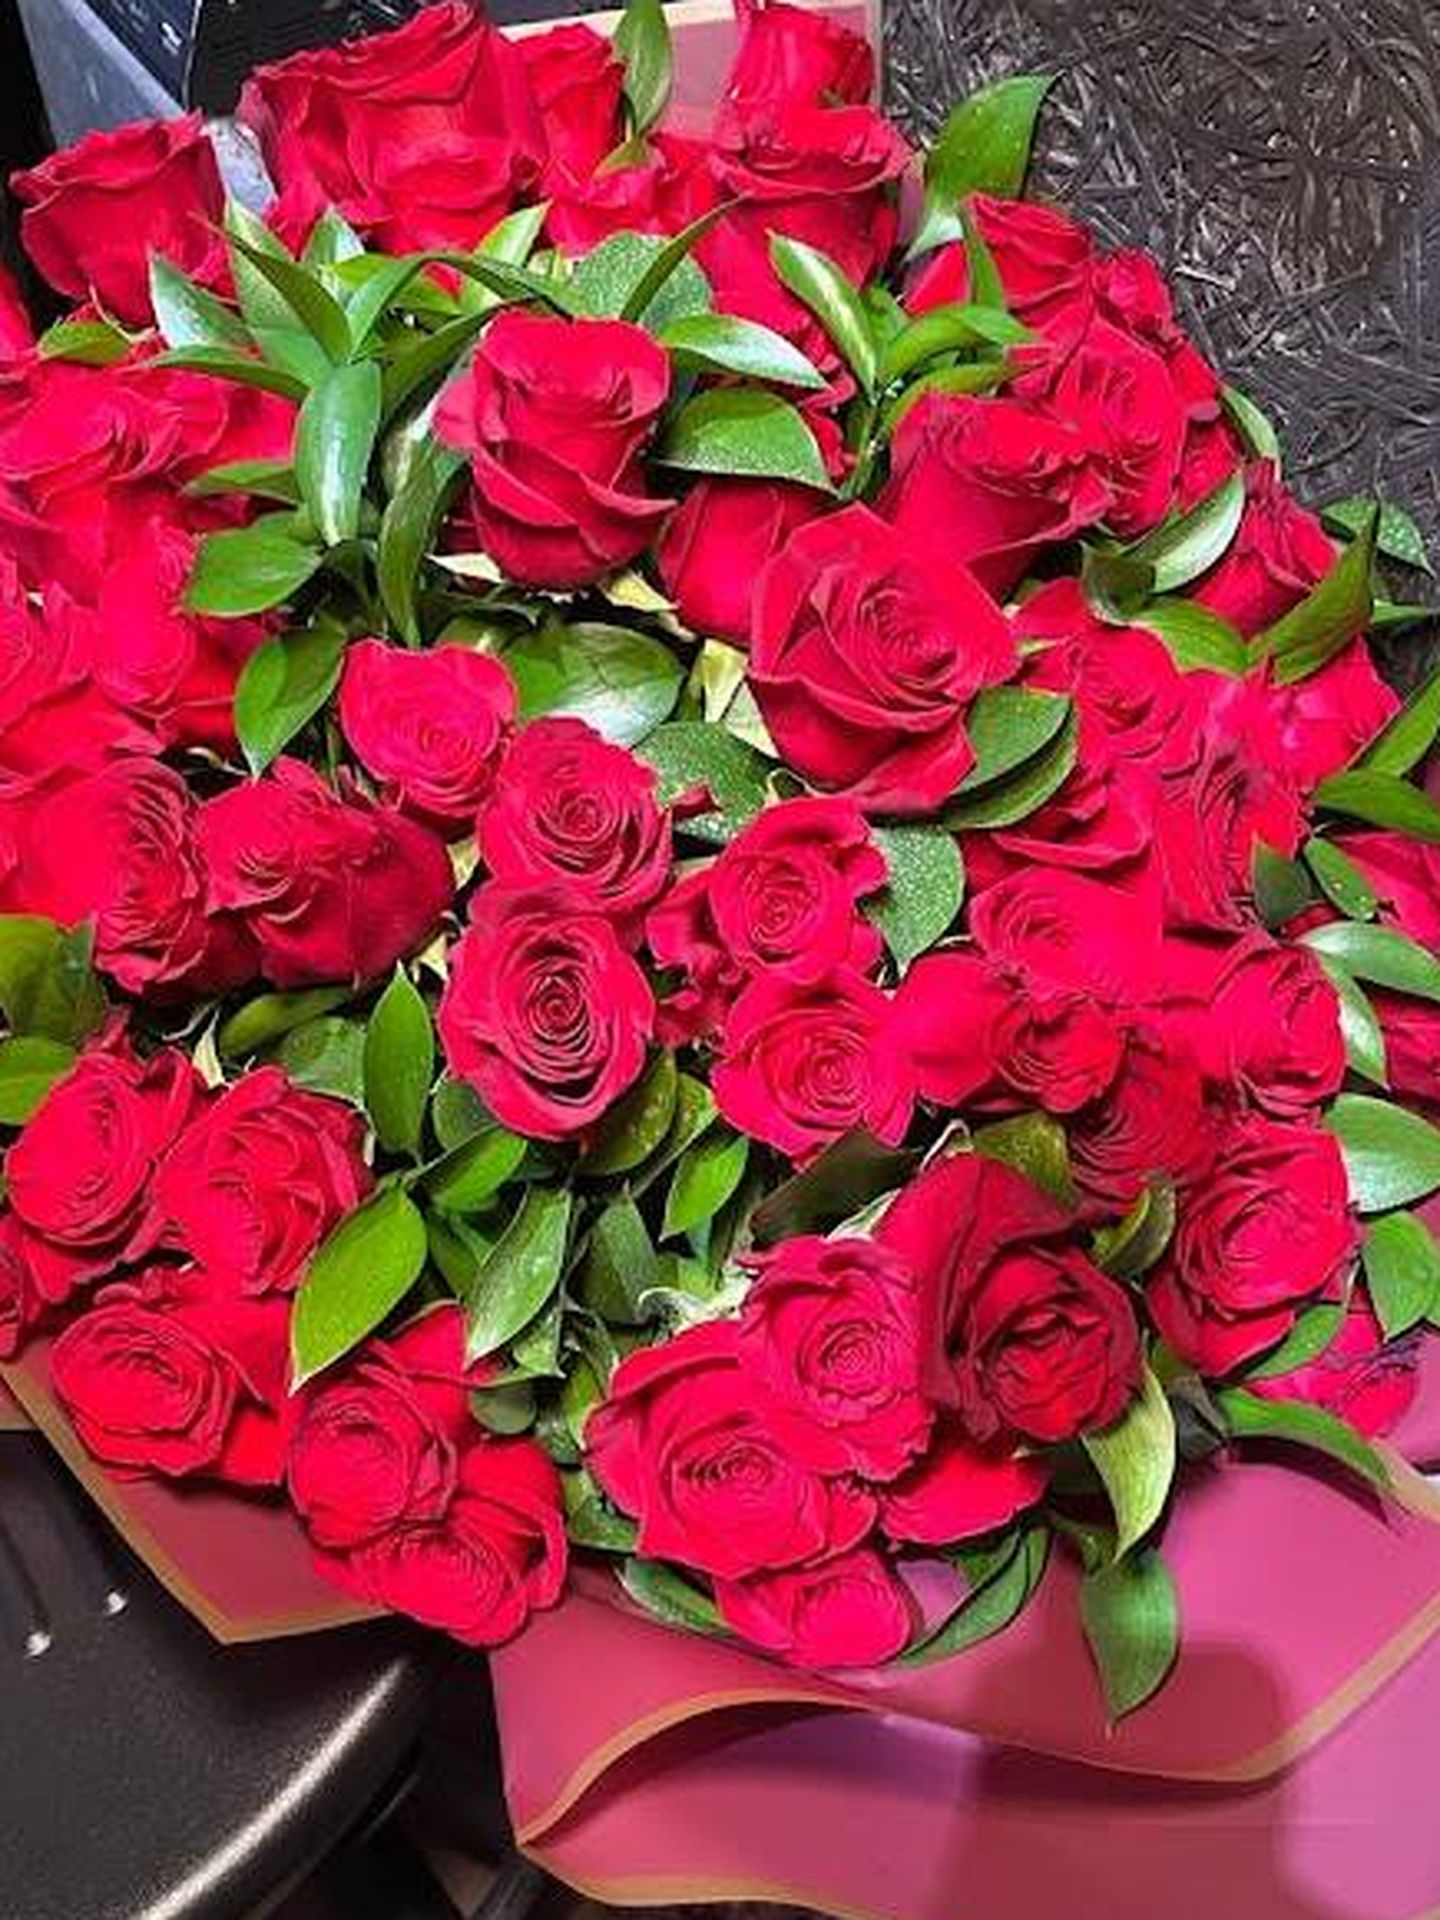 El mismo ramo con 72 rosas que regaló Almeida a su prometida. (Vanitatis)